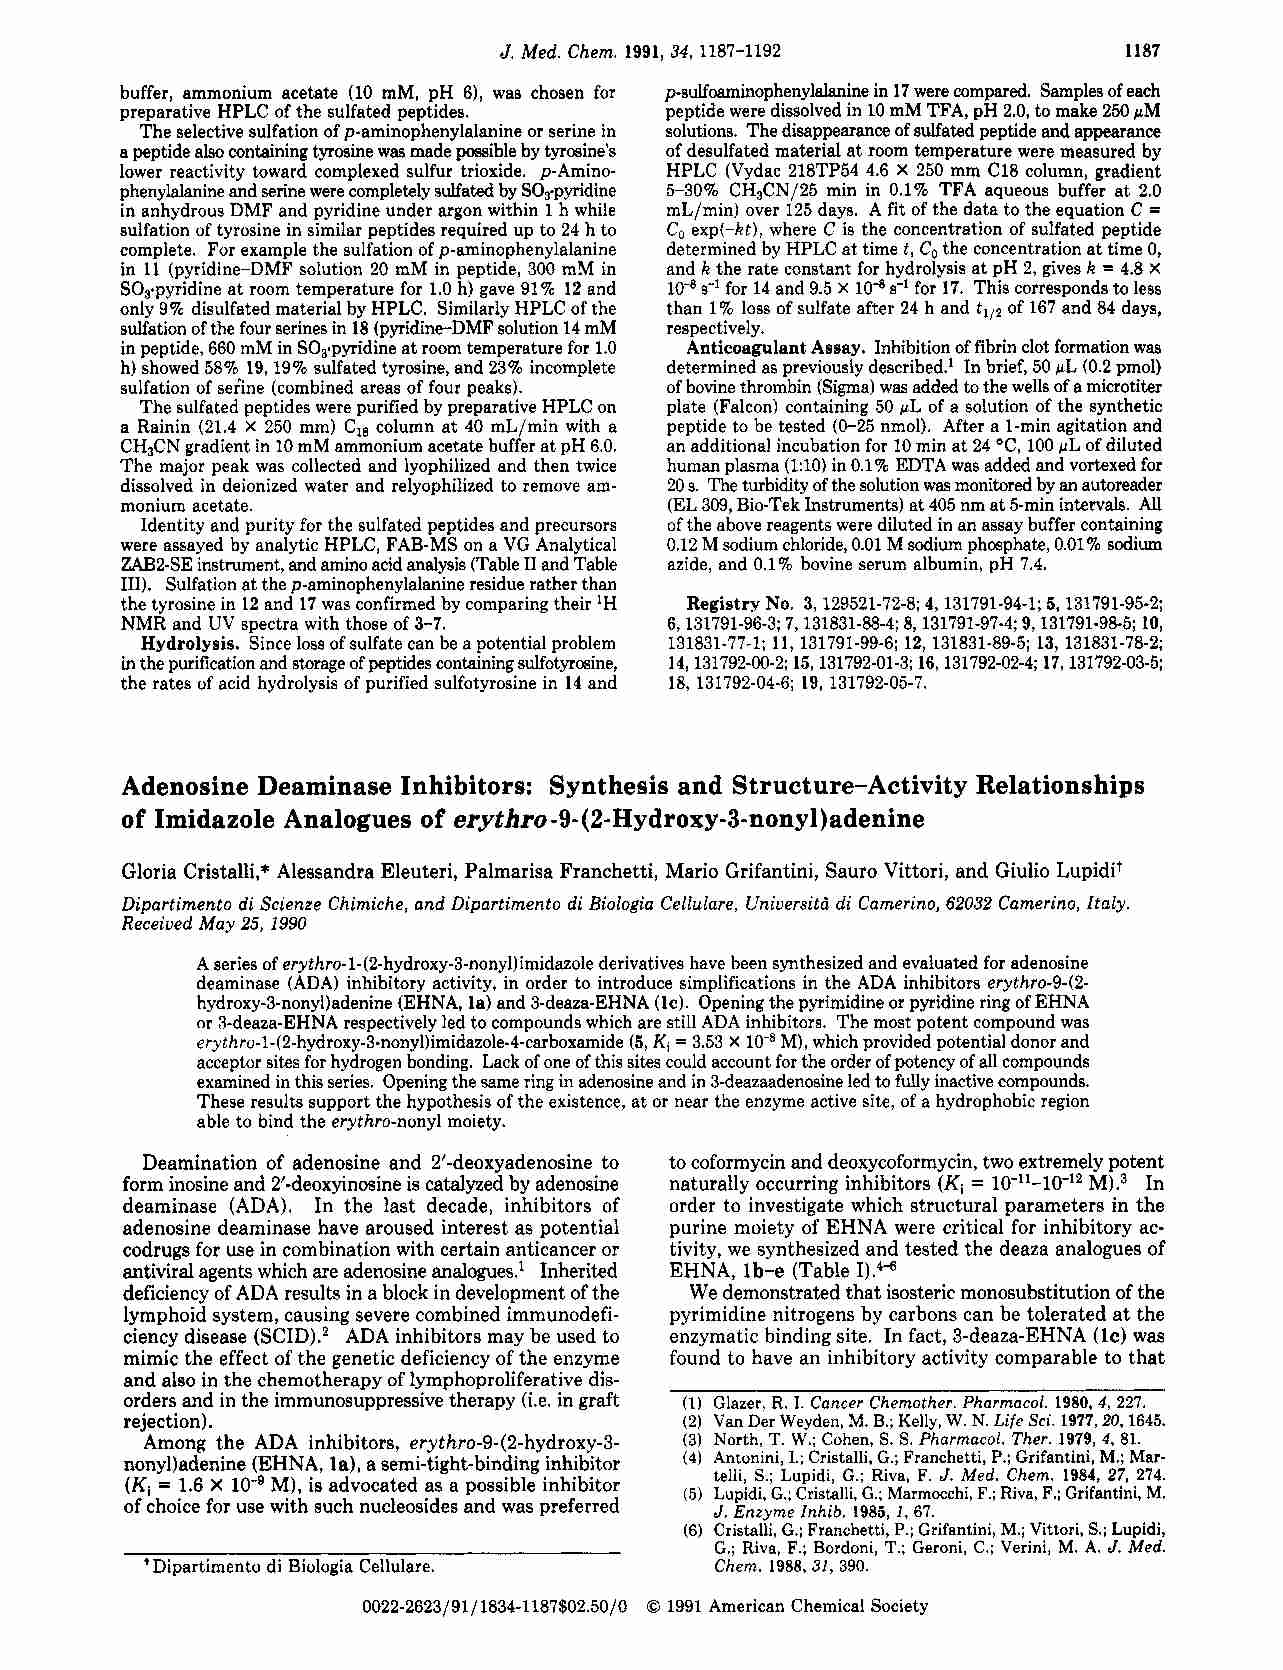 Nowoczesne metpdy wytwarzania leków - wykład - HPLC  - strona 1